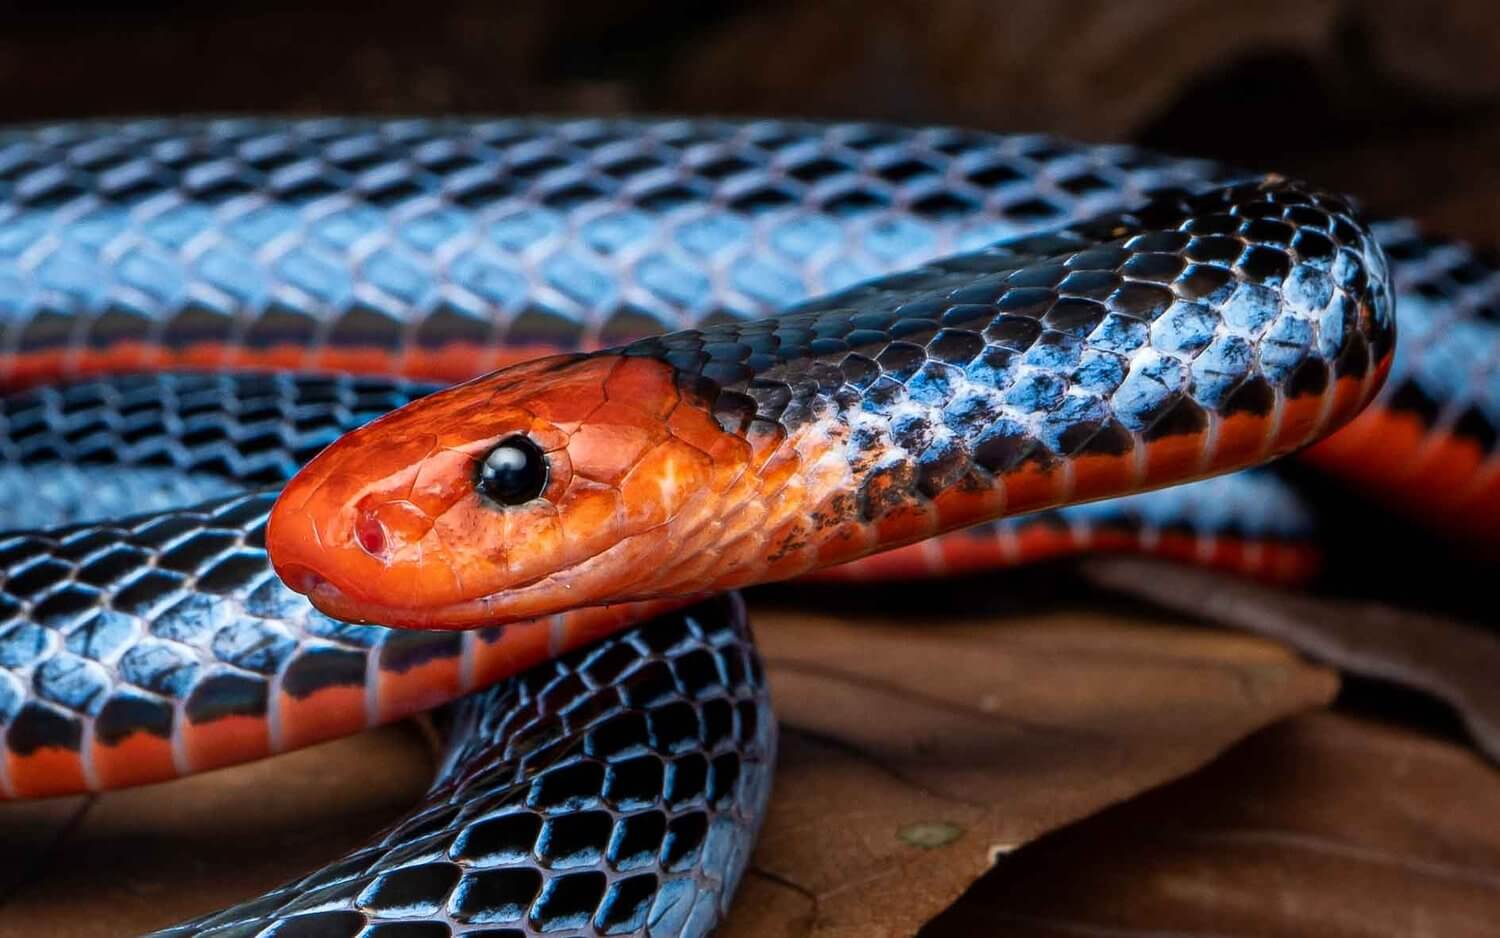 Cabeza de la serpiente de coral azul y en segundo plano parte de su cuerpo.